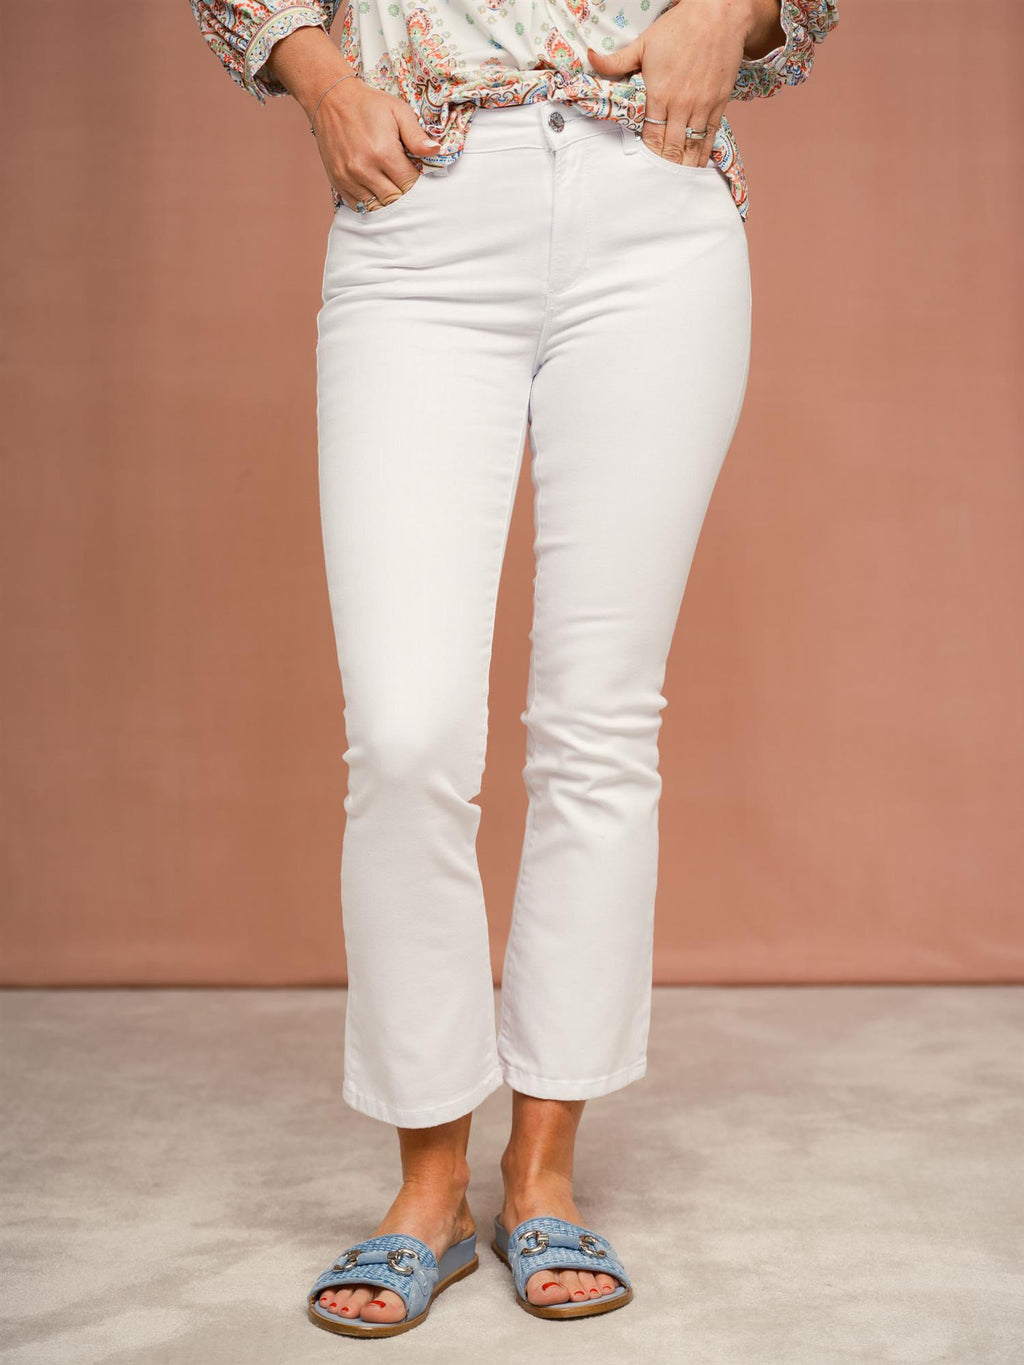 Pieszak PD-Jelena jeans white